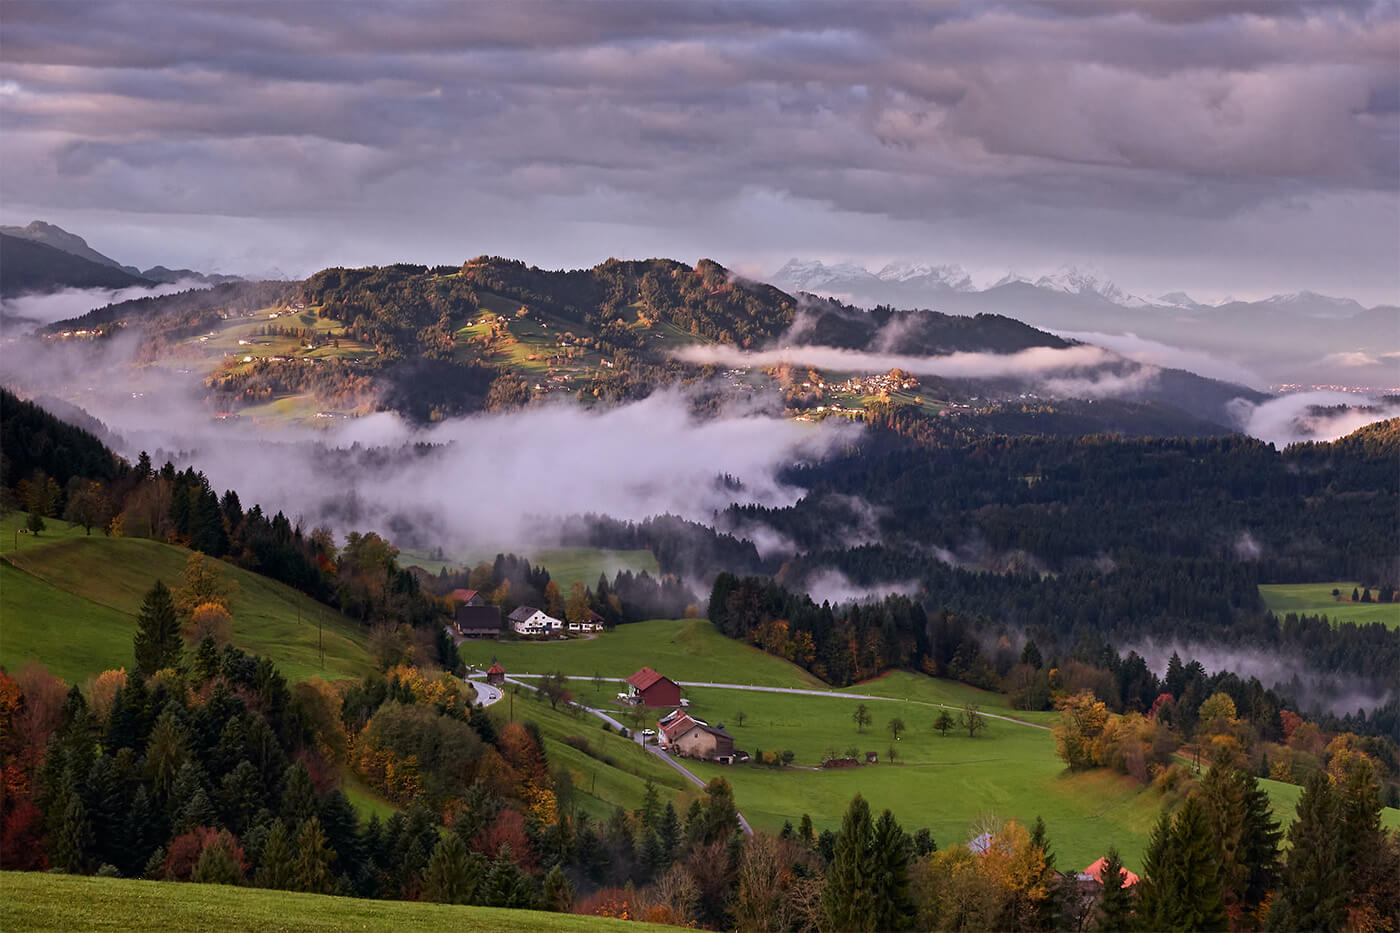 Landscape shot of Bregenzerwald